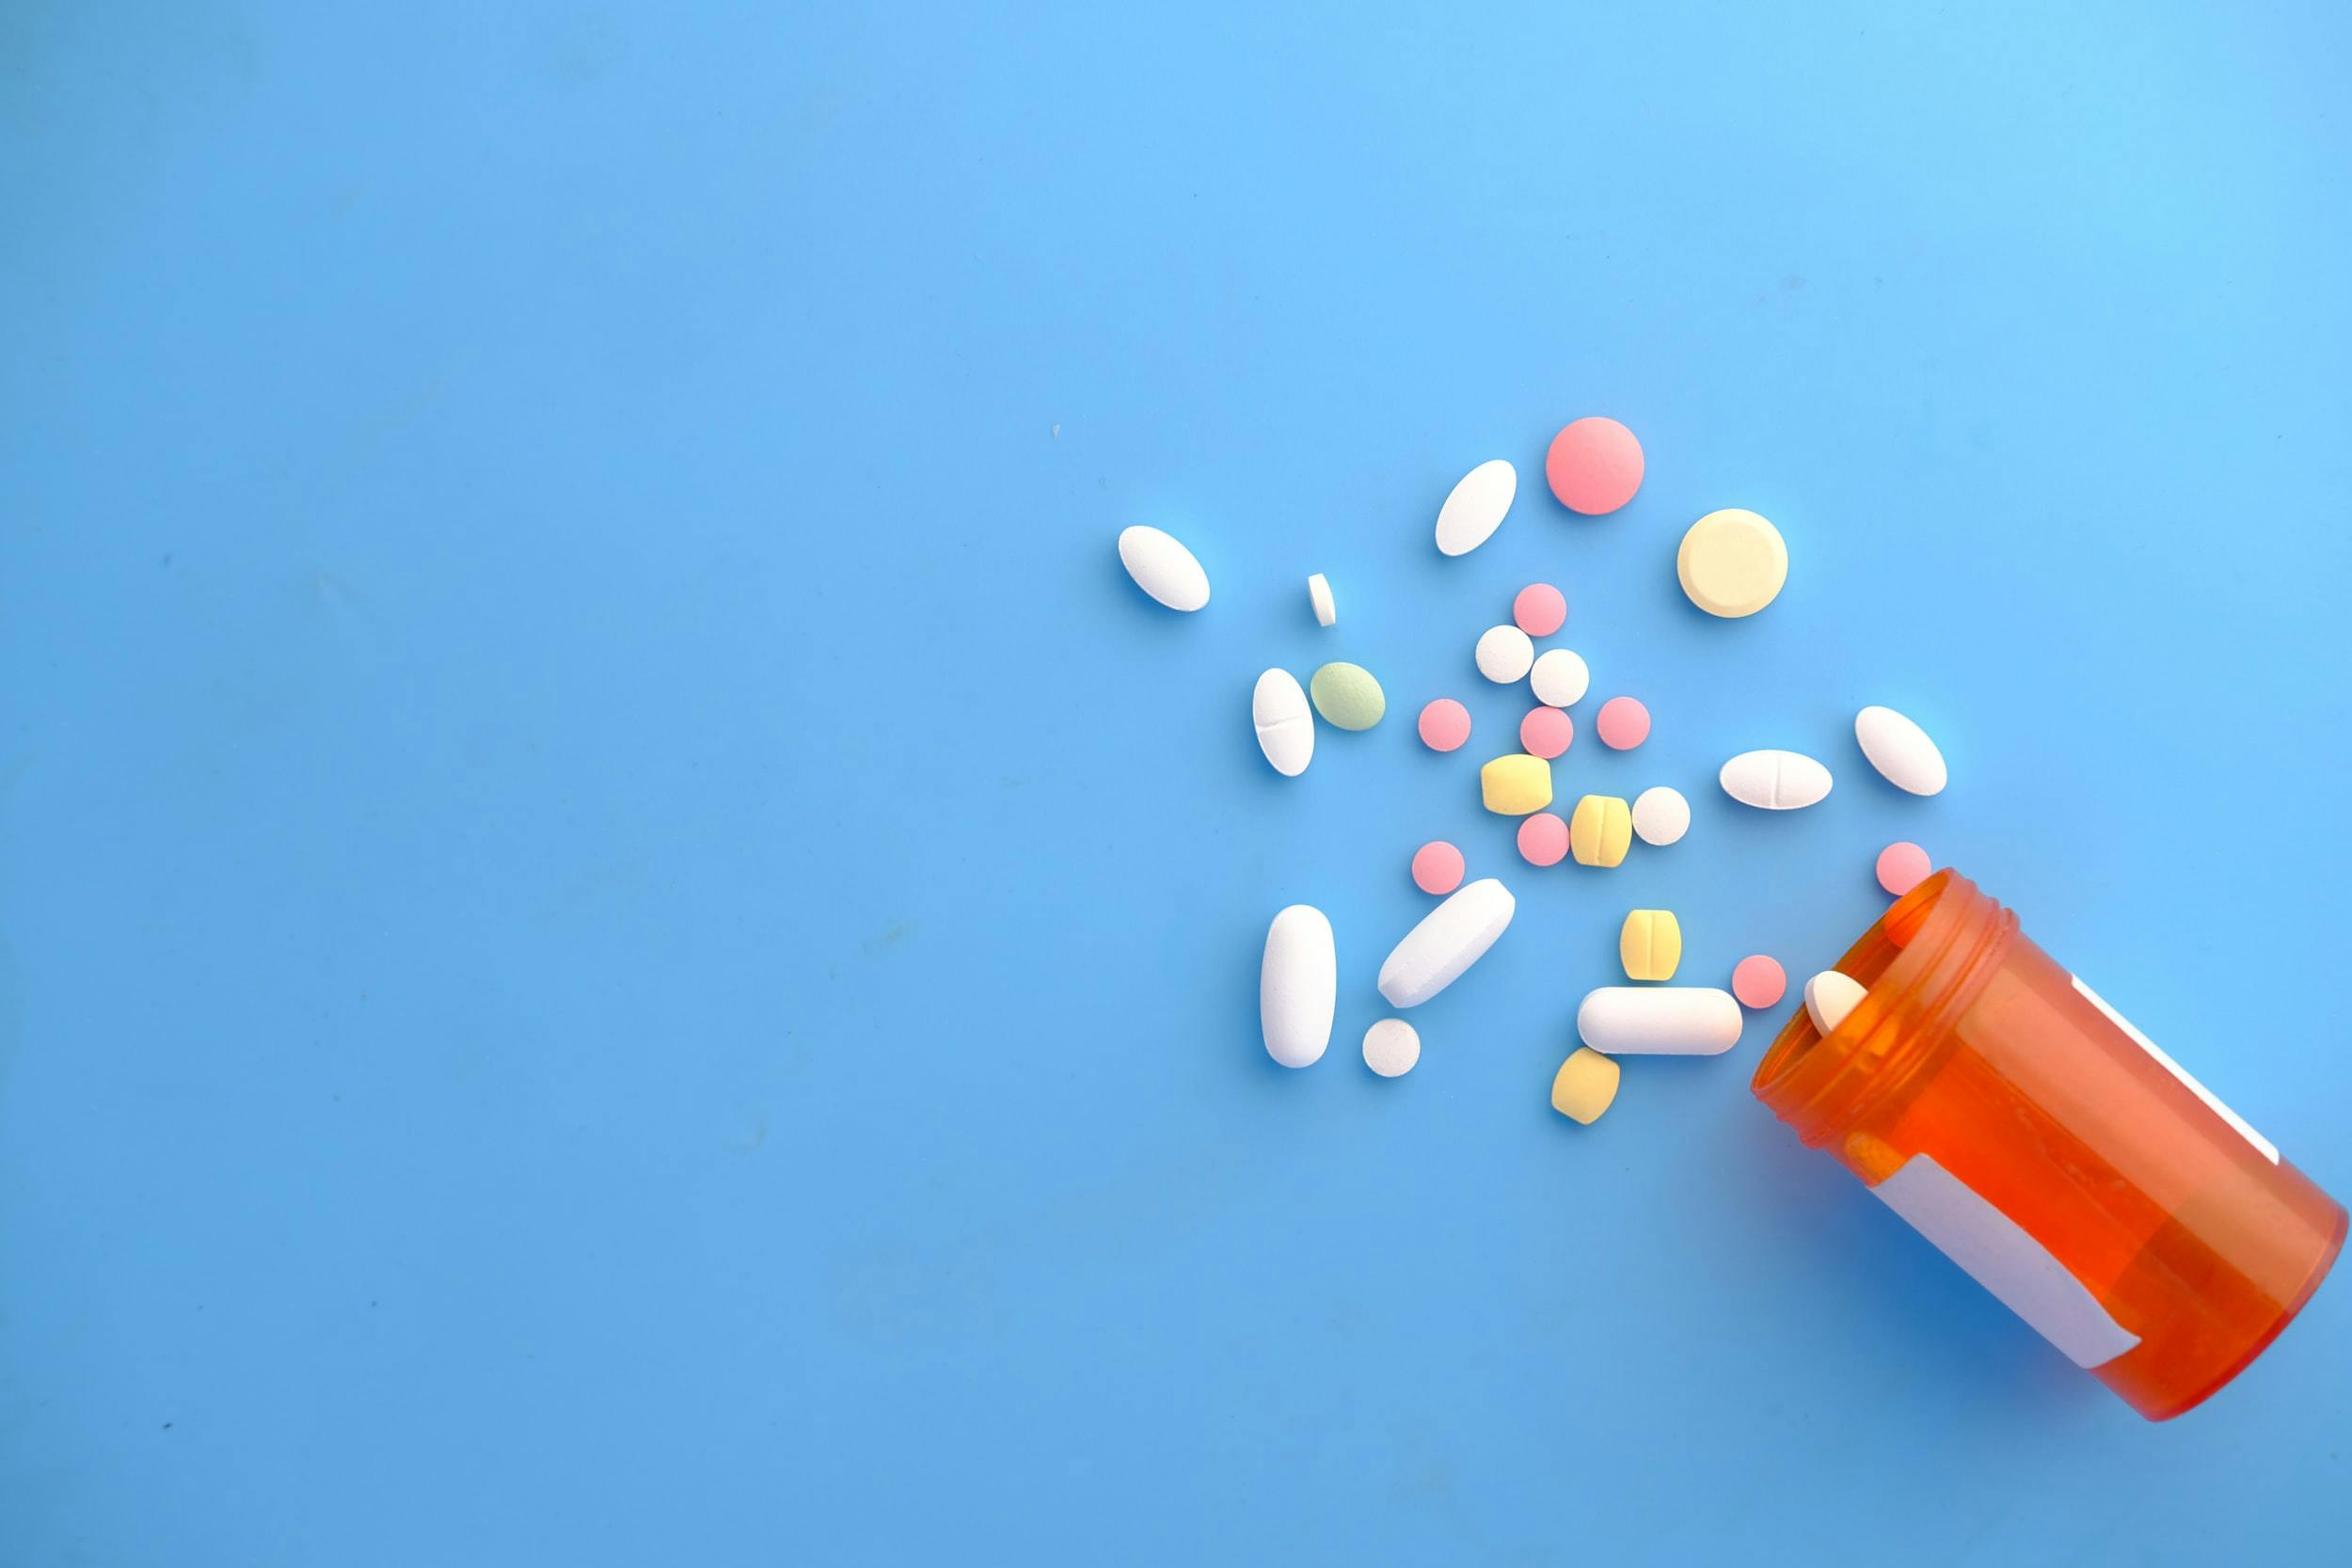 Pasticche di diversi farmaci fuori dalla confezione su sfondo blu